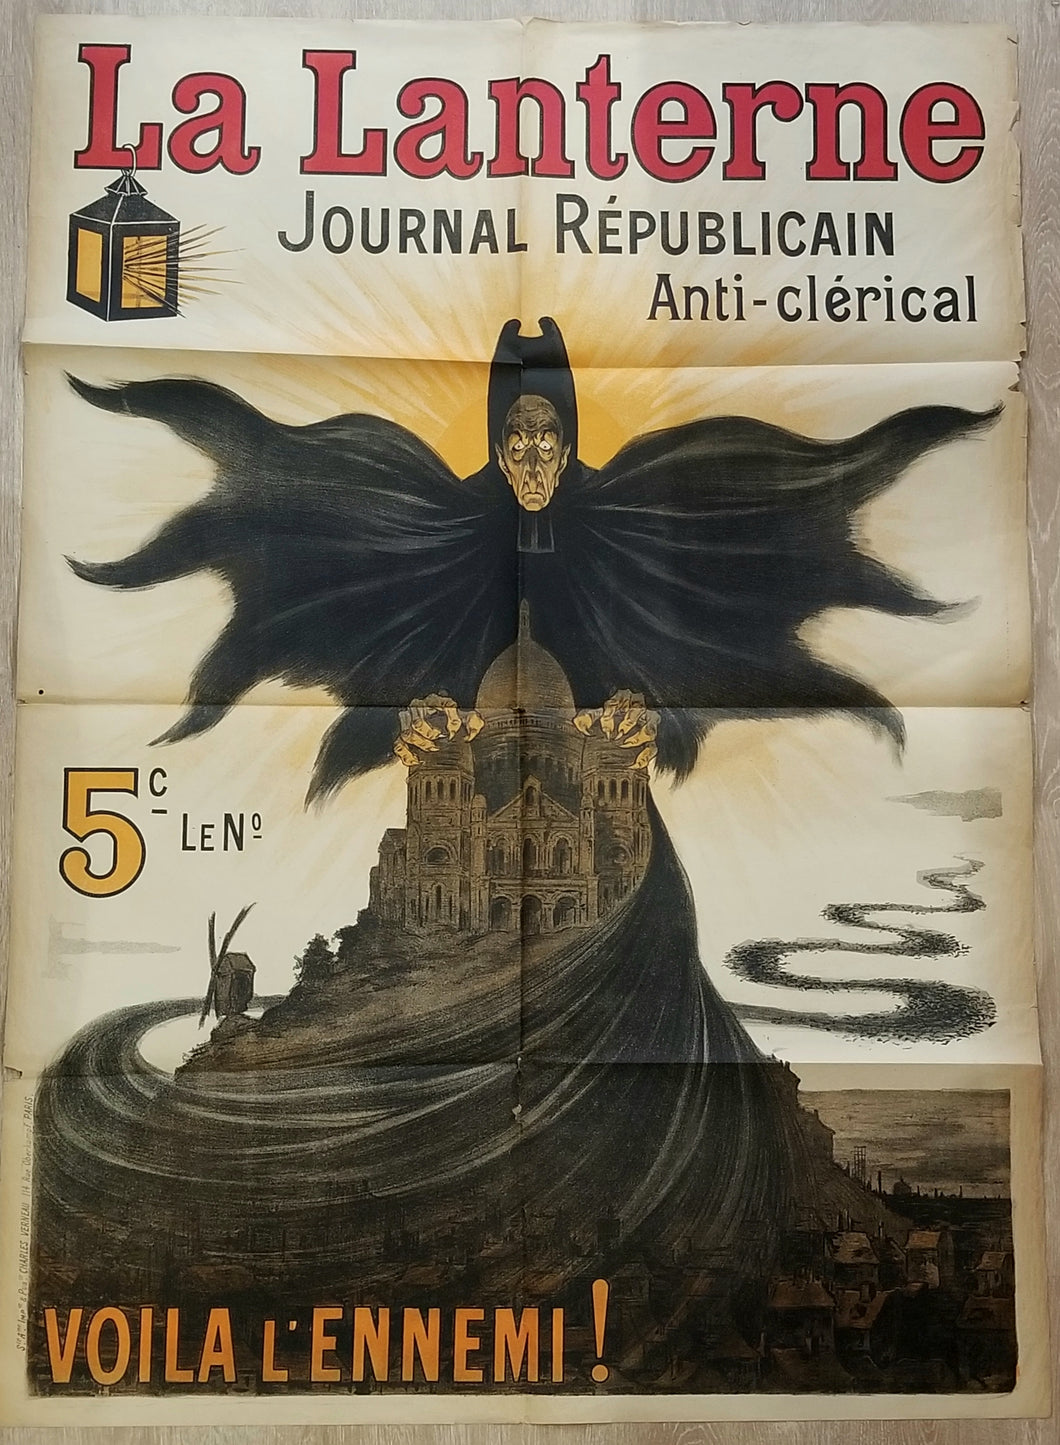 La Lanterne, Journal Républicain anti-clérical ... Voilà l'ennemi ! (Affiche).  1898.